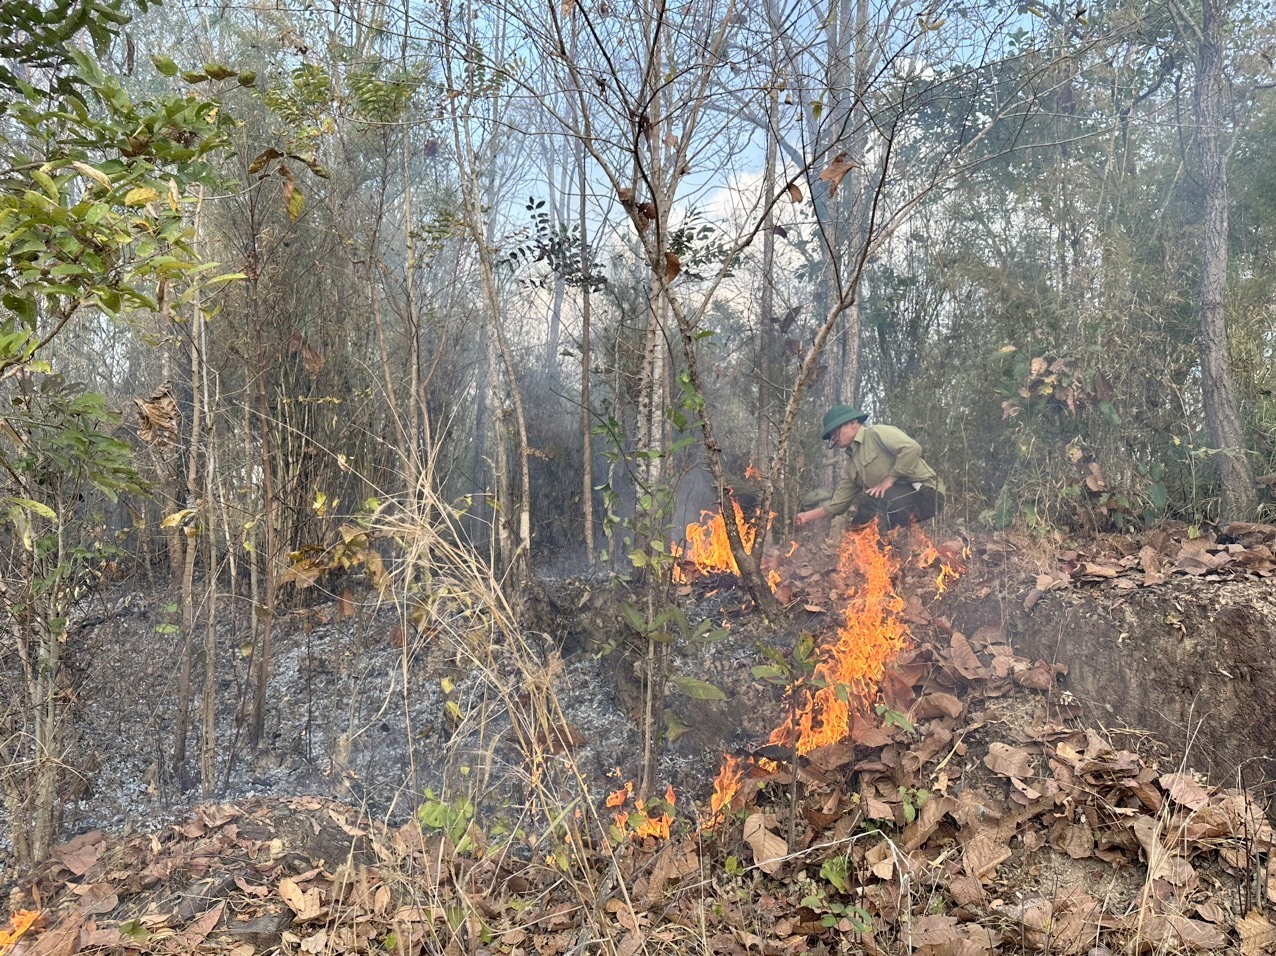 Lực lượng quản lý bảo vệ rừng của Công ty TNHH MTV Lâm nghiệp Đắk Win chủ động ngăn chặn giặc lửa. Ảnh: Phan Tuấn